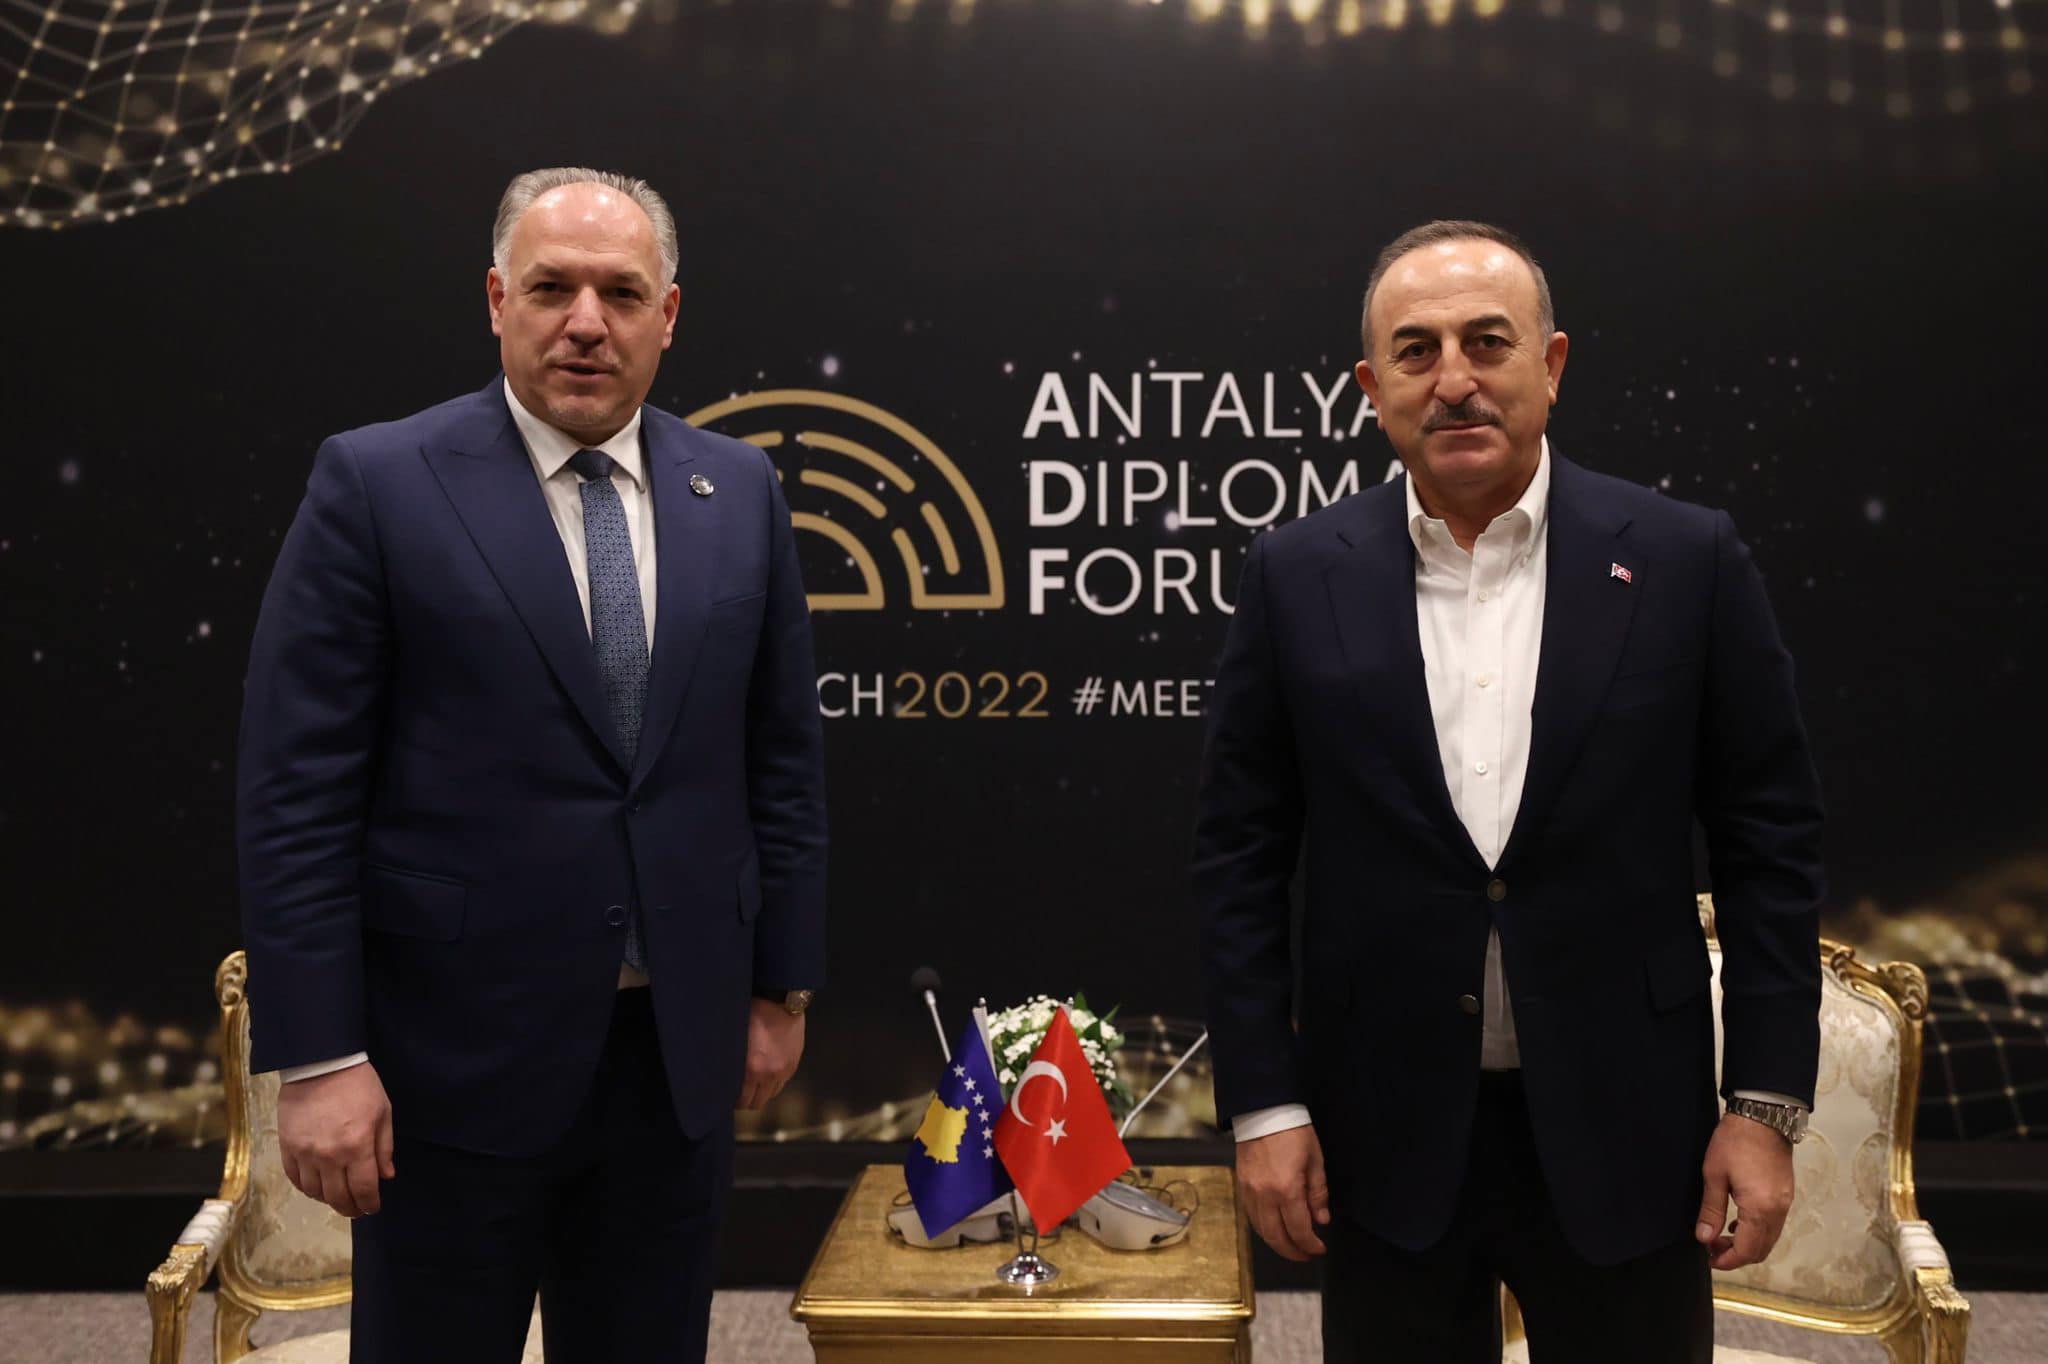 Ministri i Zhvillimit Rajonal z. Fikrim Damka u takua me Ministrin e Punëve të Jashtme të Republikës së Turqisë z. Mevlüt Çavuşoğlu, në kuadër të Forumit të Diplomacisë në Antalia